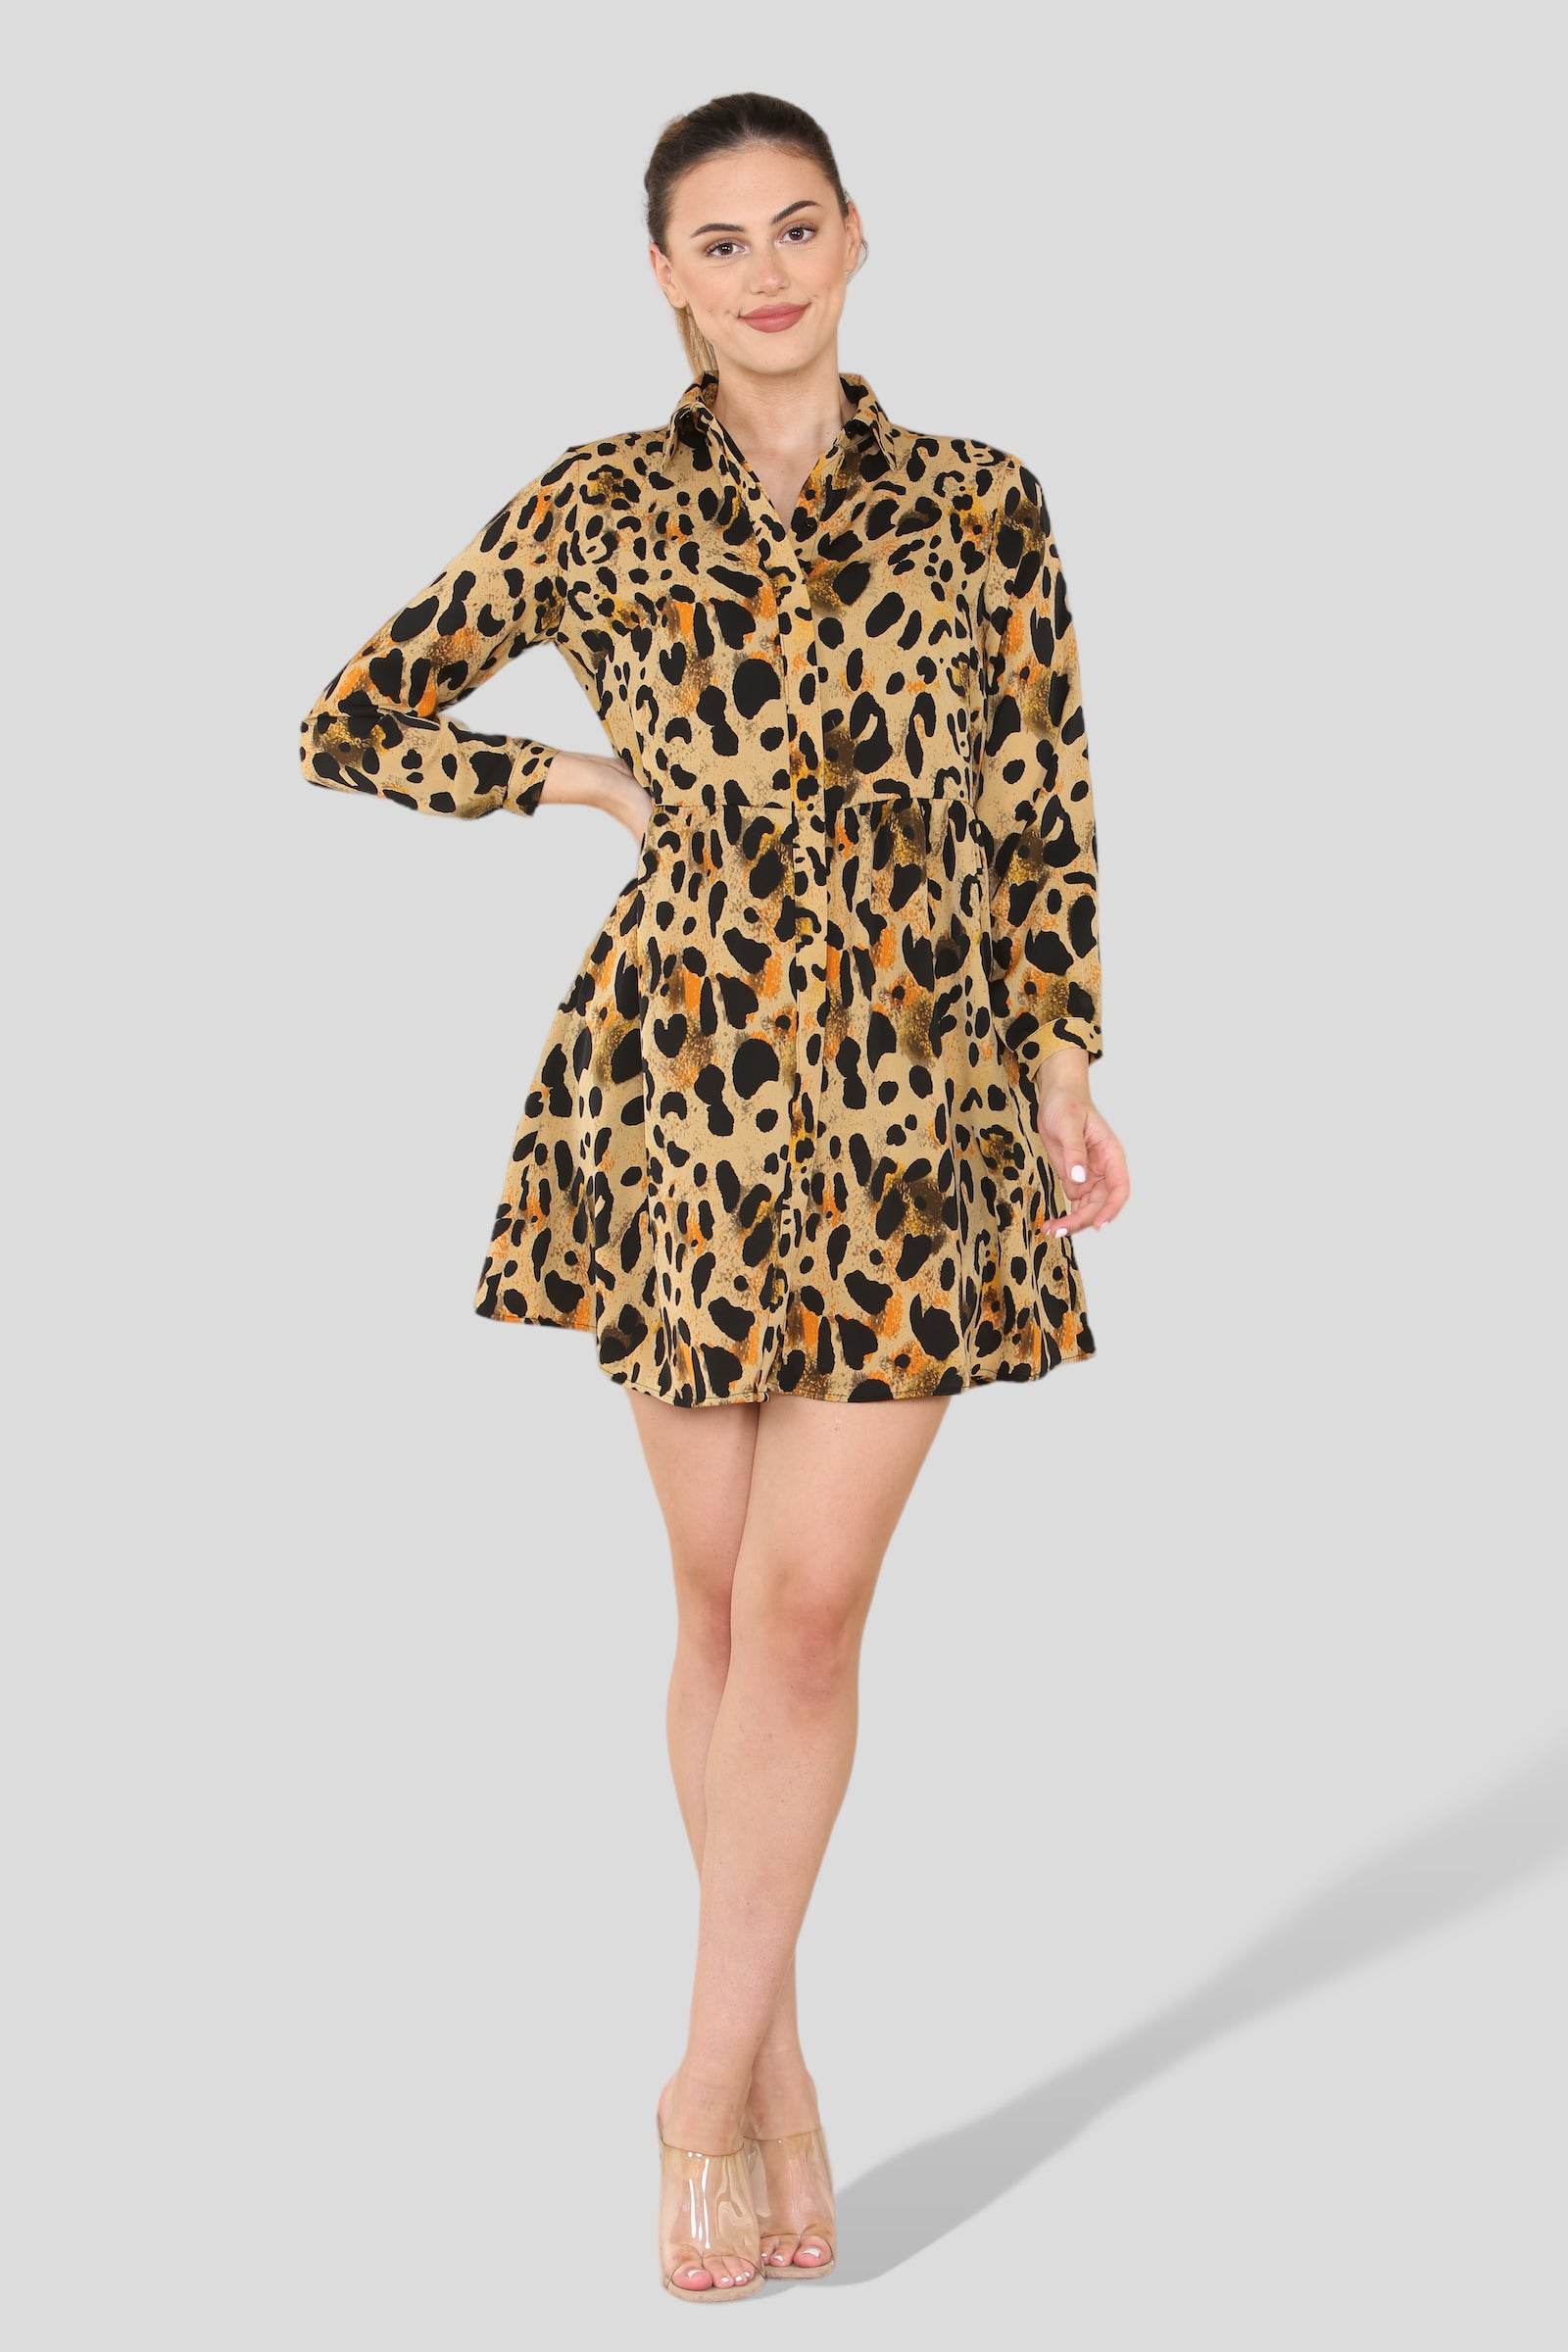 Tan Leopard Print Smock Mini Shirt Dress LS2313-EC1